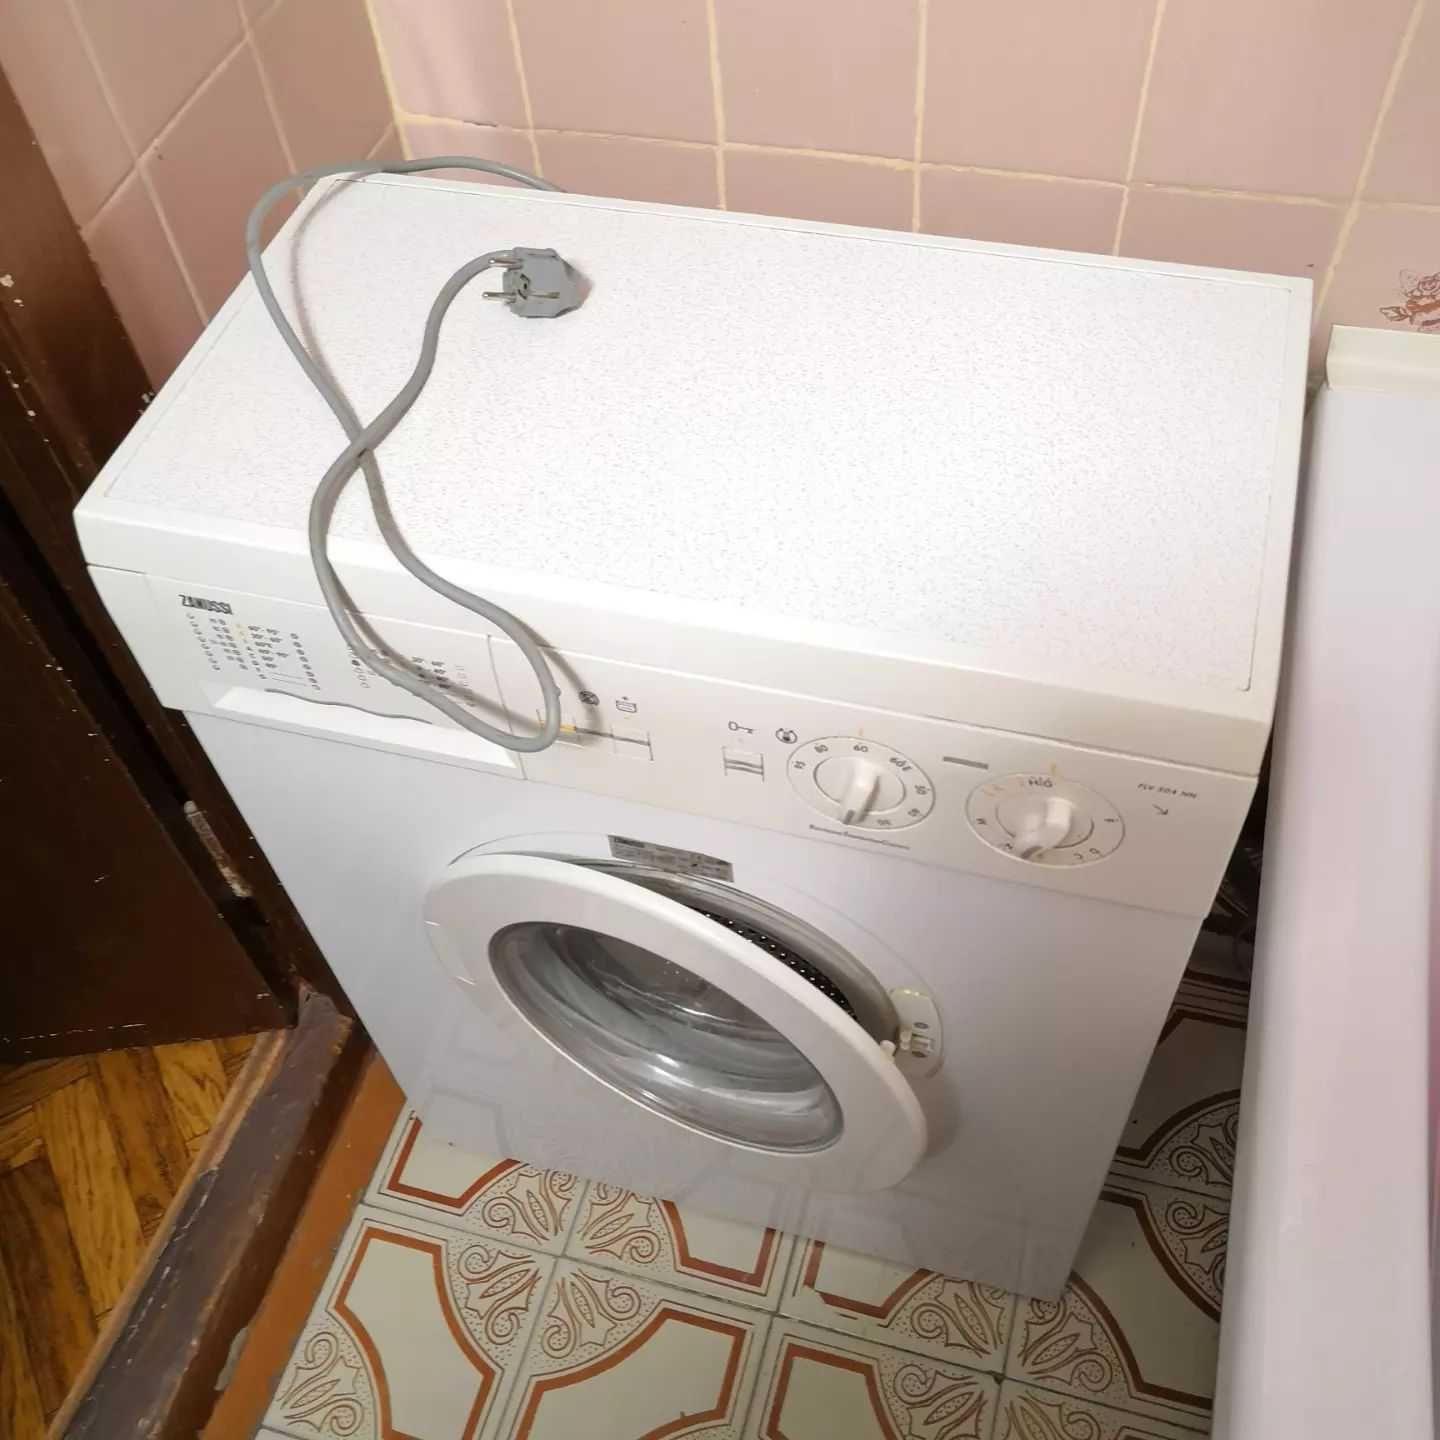 Ремонт стиральных машин по вашему адресу в Алматы